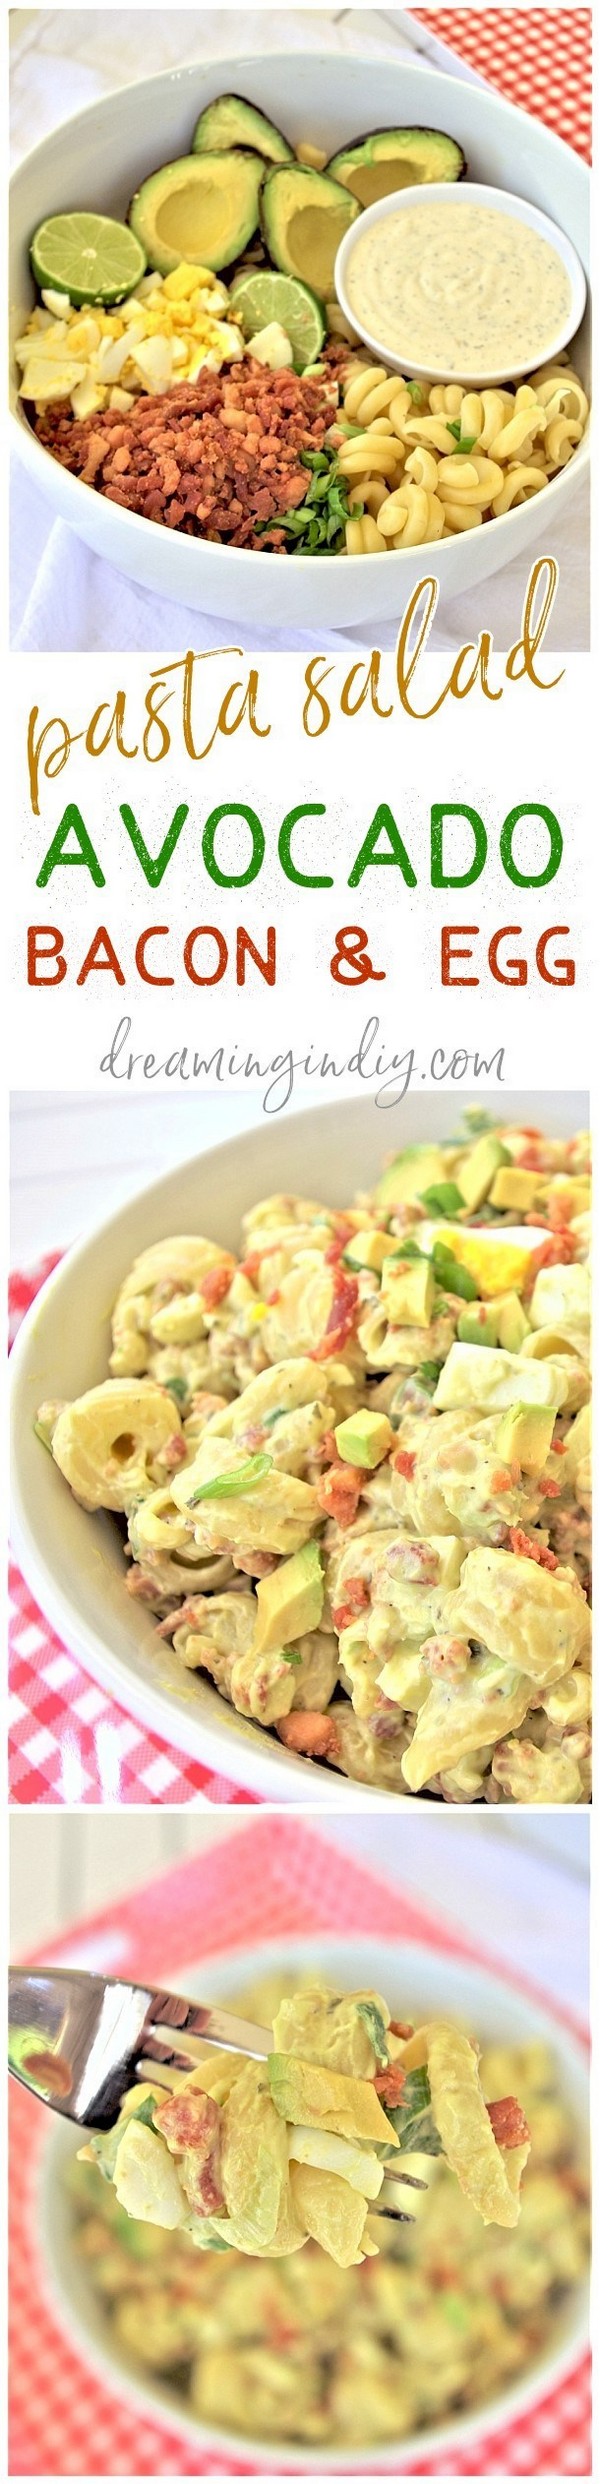 Avocado Egg And Bacon Pasta Salad